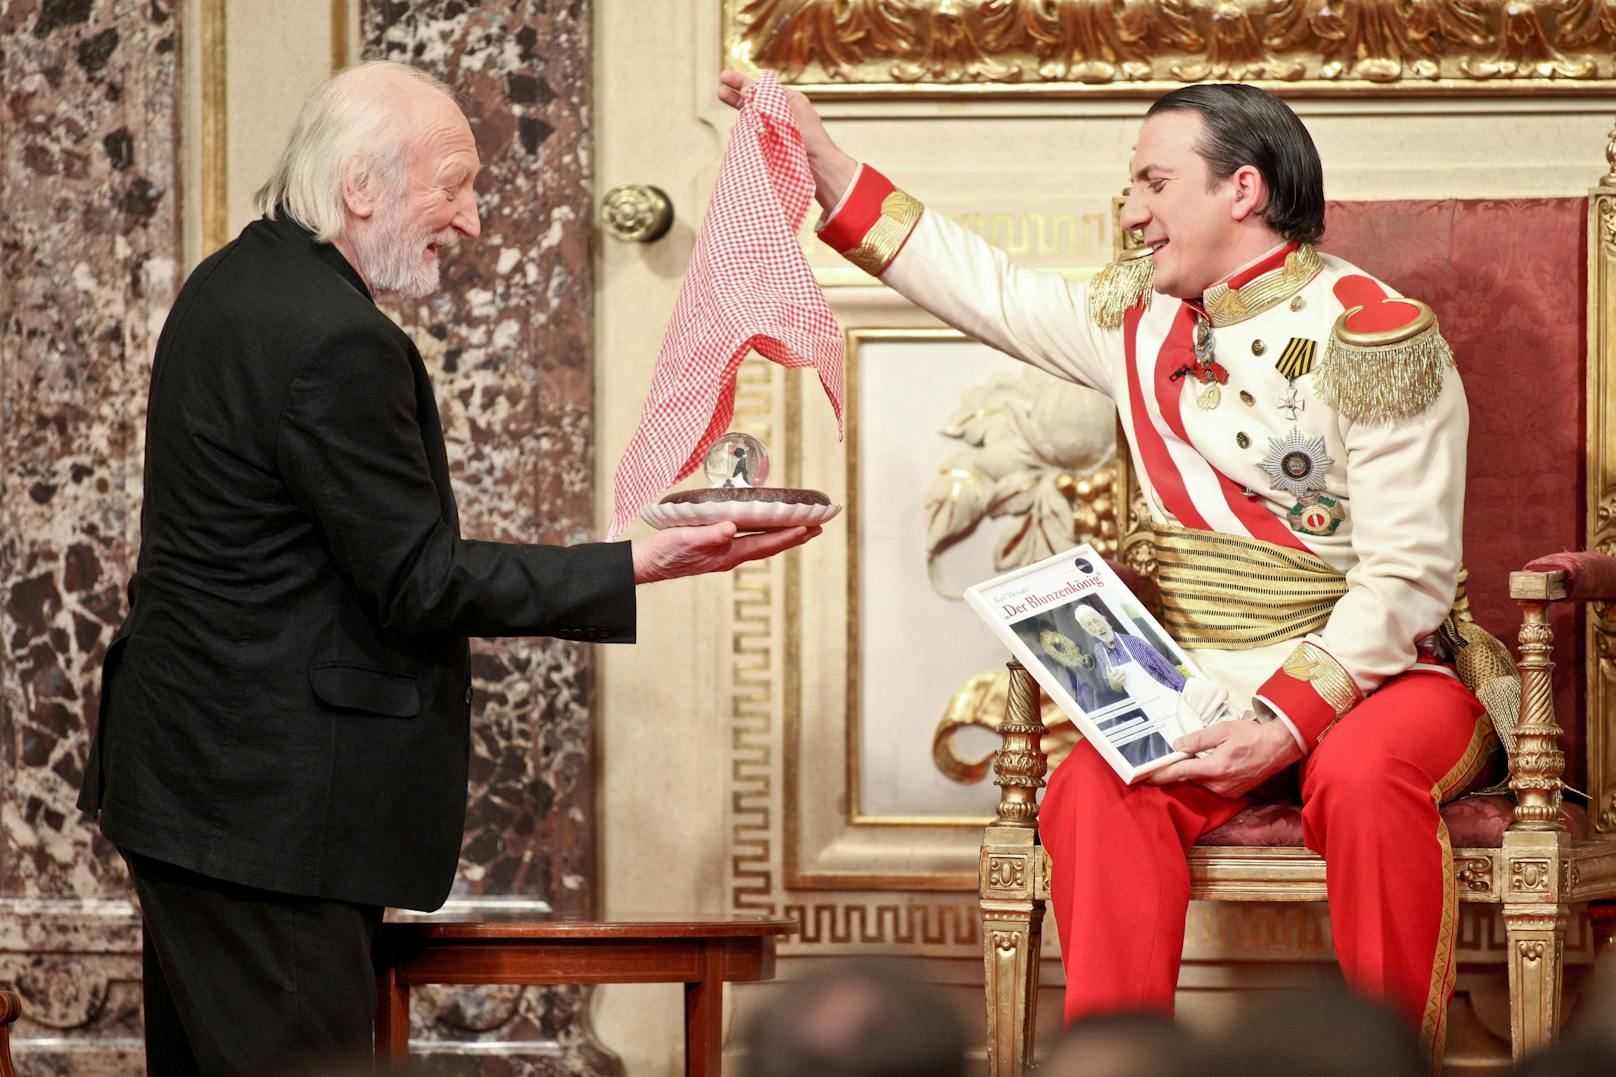 Karl Merkatz bei "Wir sind
Kaiser - Österreich ist wieder Monarchie!" (2010)